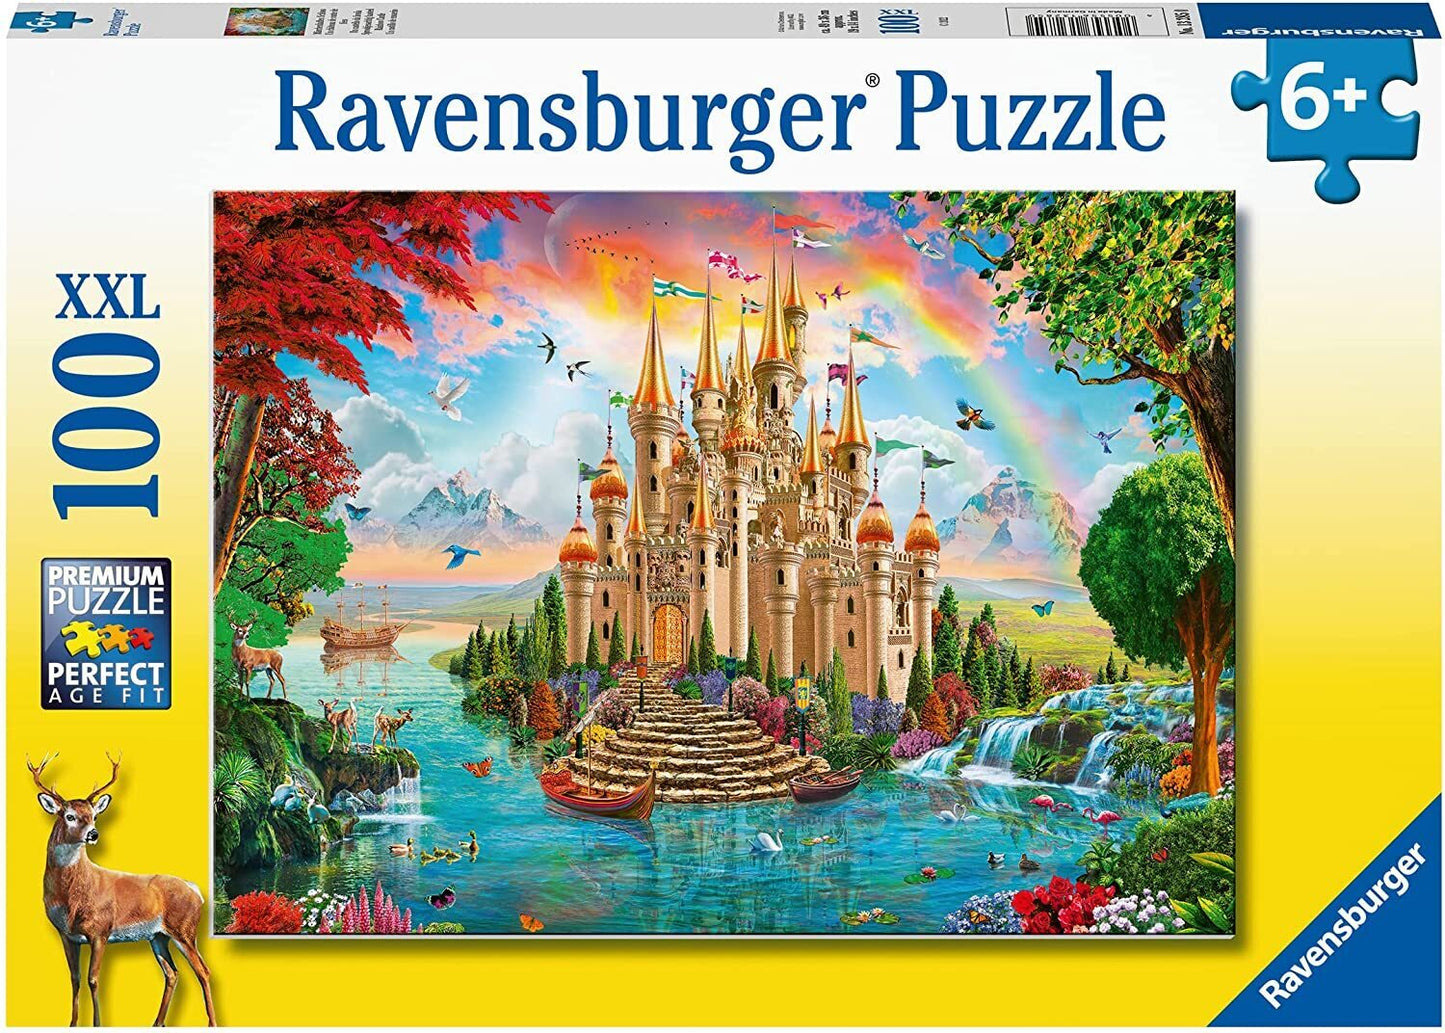 
                  
                    Ravensburger Puzzle 100pc
                  
                